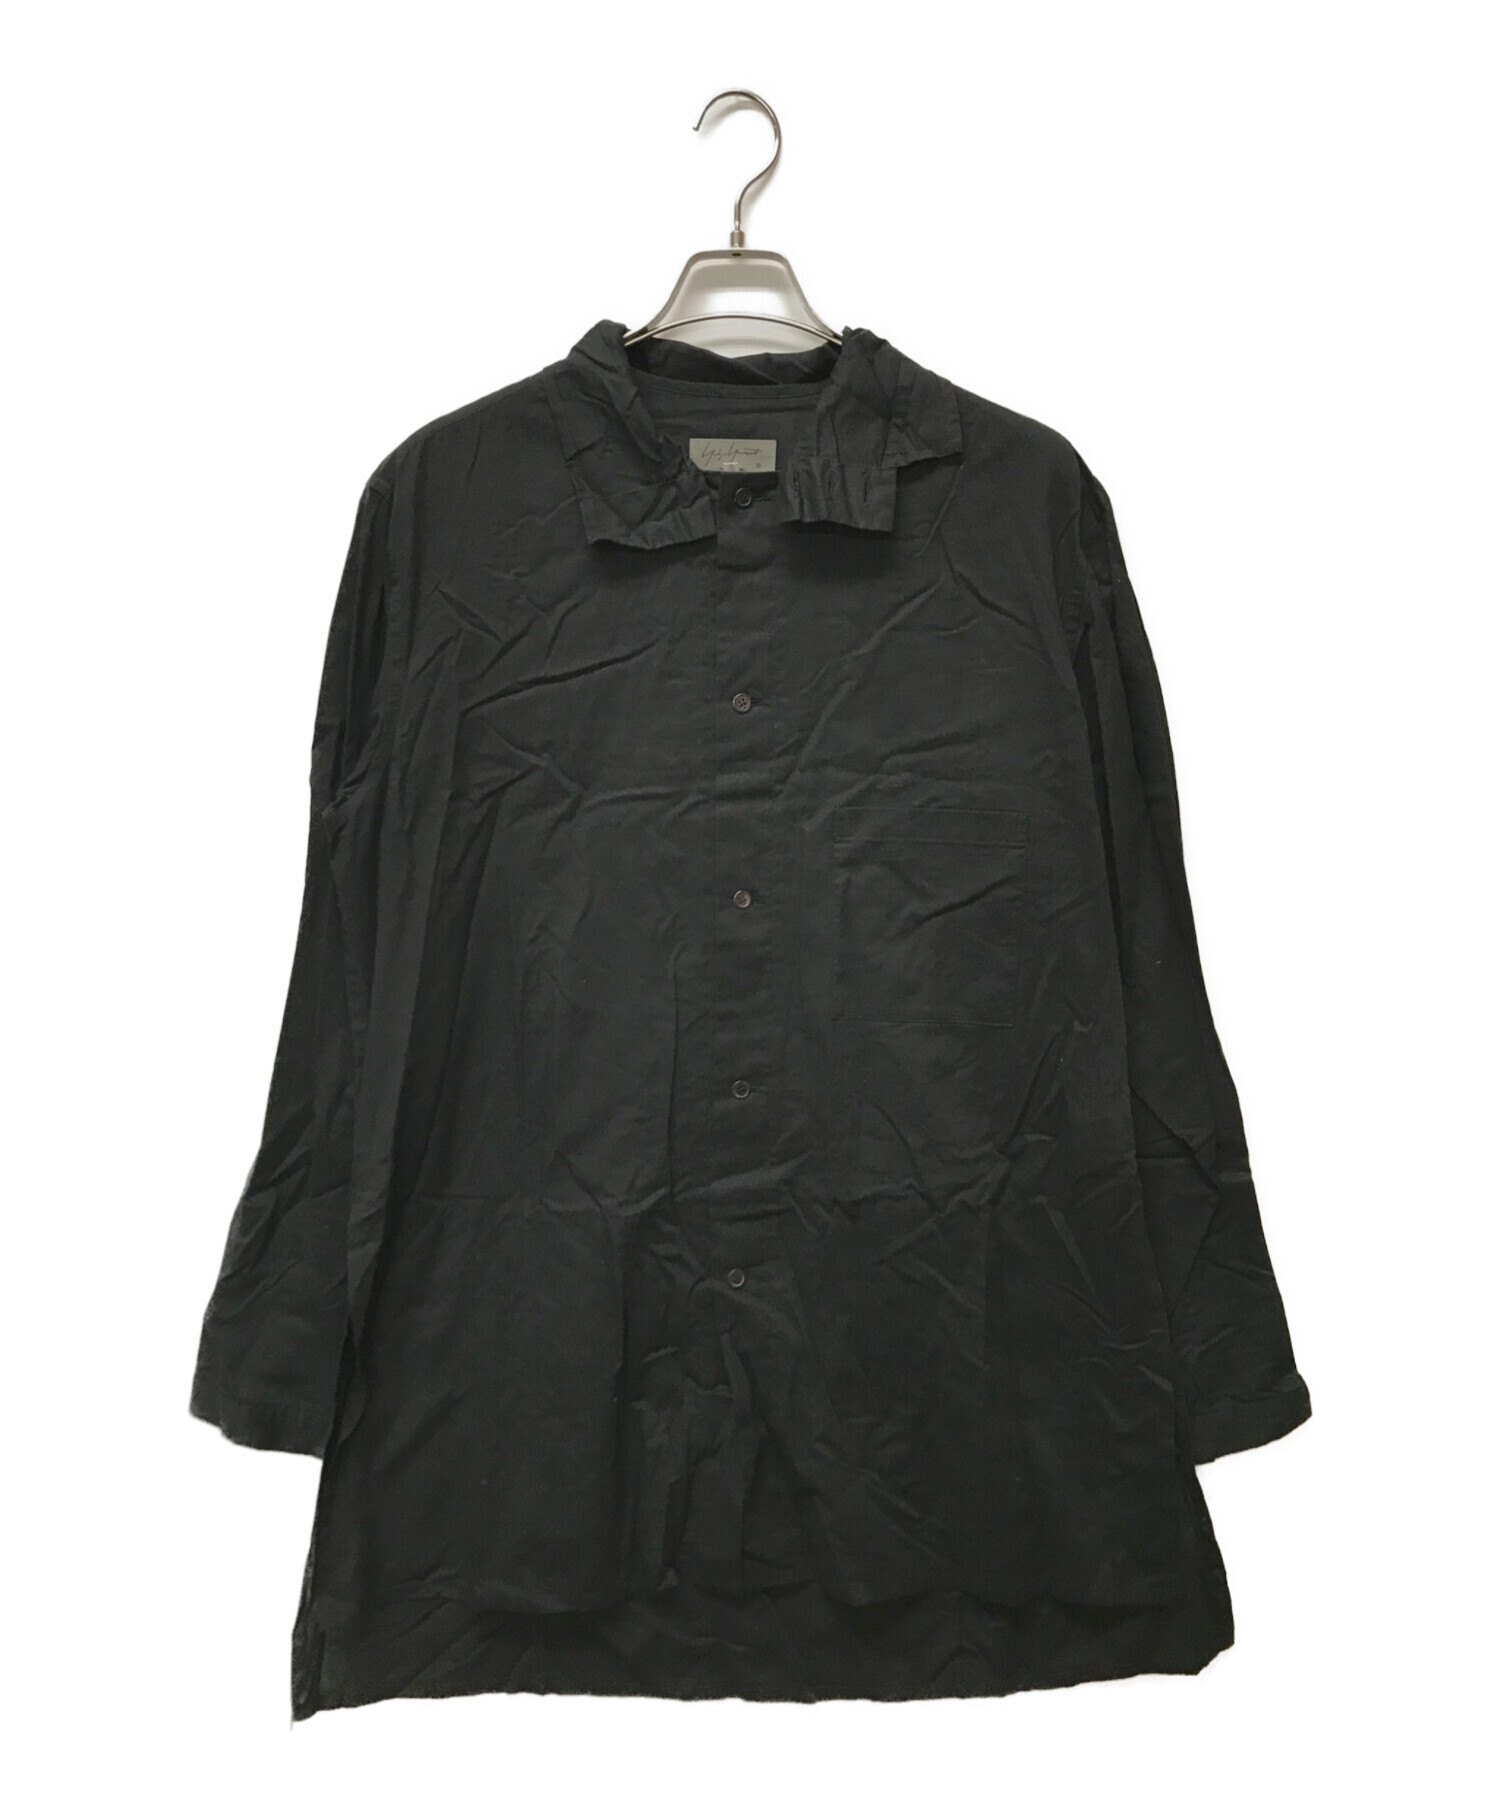 Yohji Yamamoto pour homme (ヨウジヤマモト プールオム) リネンブレンドスタンドカラーロングシャツ ブラック サイズ:4